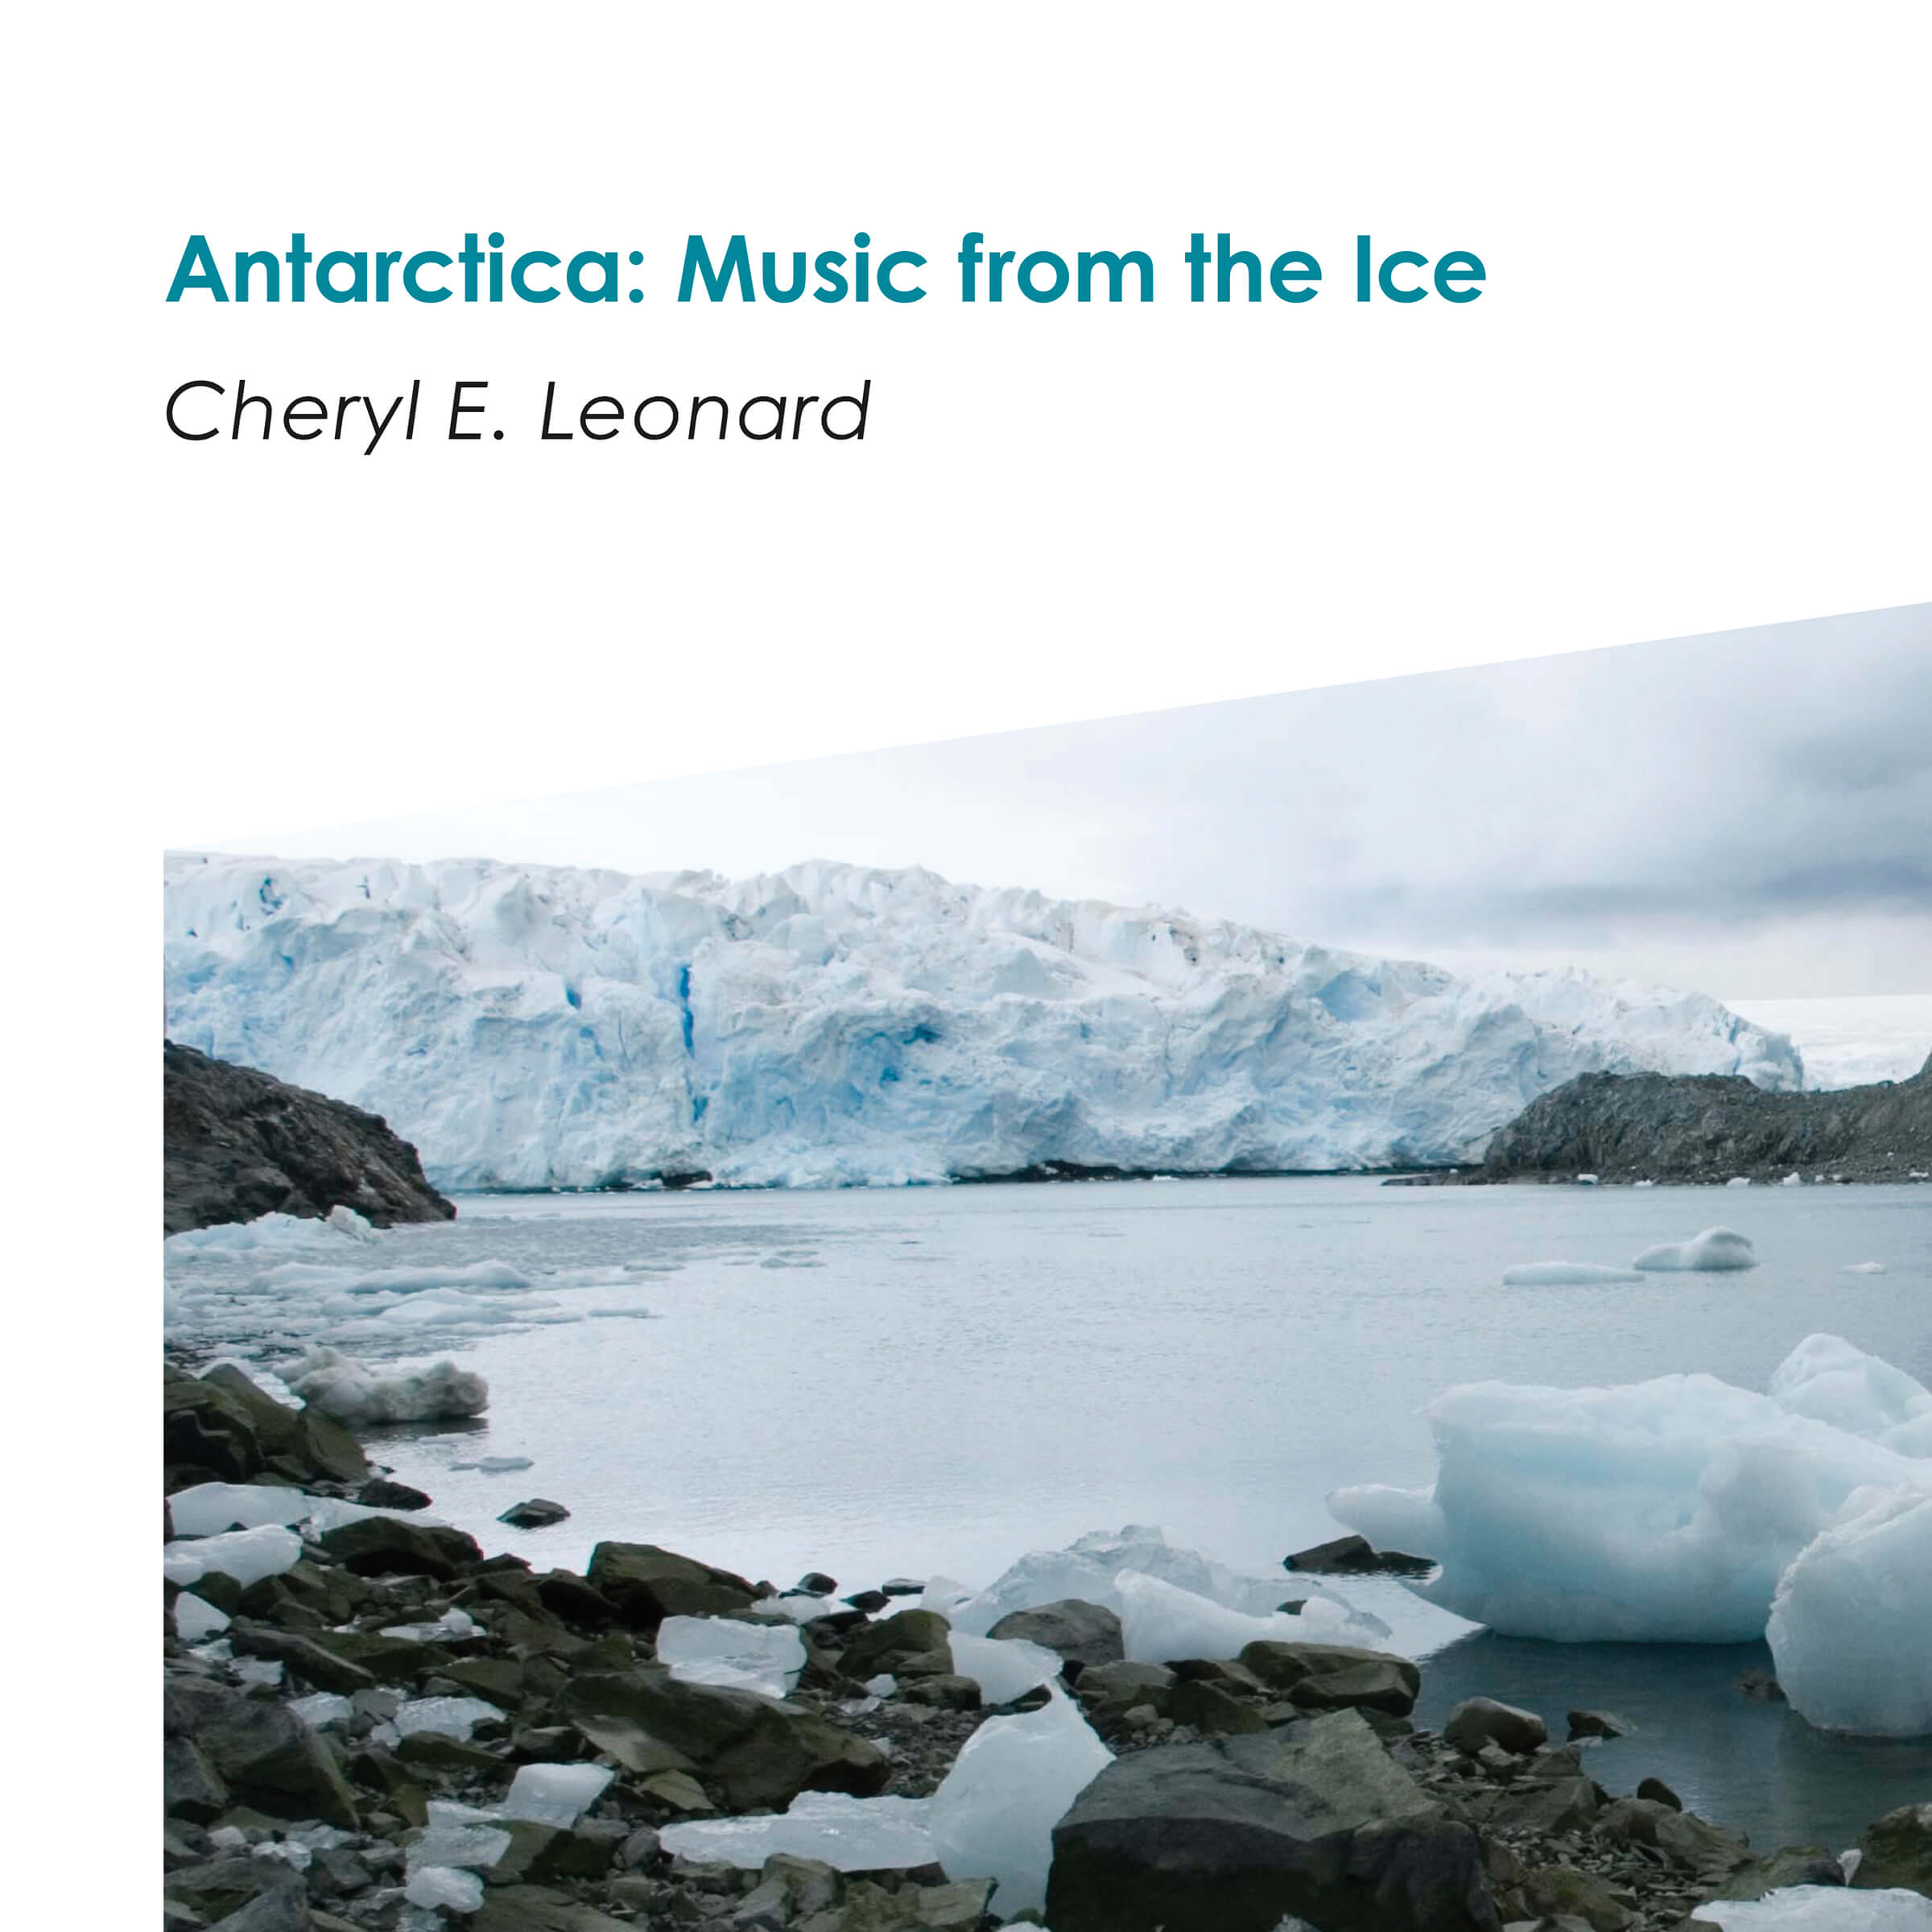 cheryl-leonard-antarctica-square-cover-2400px-c